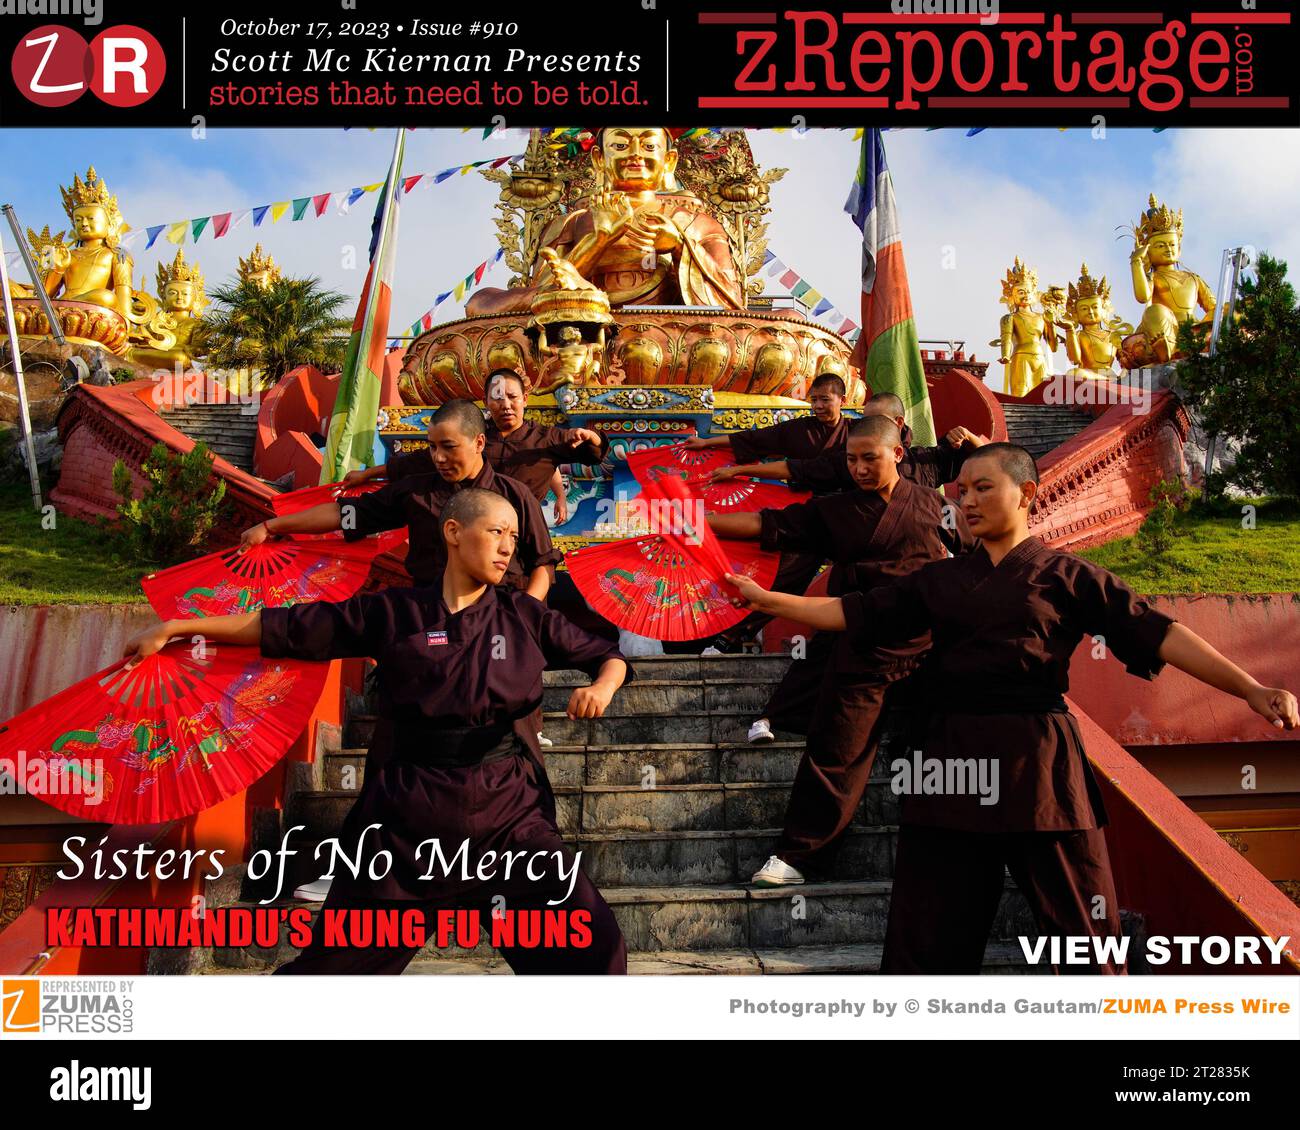 zReportage.com Numéro #910 Histoire de la semaine : publié MARDI 17 octobre 2023: "Sisters of No Mercy : Katmandou's Kung Fu Nunss' photos par Skanda Gautam, photographe primée de ZUMA Press : la légende raconte qu'il y a 1 000 ans dans l'Himalaya, le bouddhiste Gyalwang Drukpa a vu neuf dragons voler dans le ciel. Il a été tellement inspiré qu'il a décidé de créer et de former un nouvel ordre de religieuses, engagé pour la paix, la nature, l'égalité des sexes et, plus récemment, le kung fu. Les 350 femmes de l'ordre des dragons Drukpa sont hautement qualifiées dans les arts martiaux, dans lesquels elles s'entraînent avec des épées, des machettes et des nunchucks six da Banque D'Images